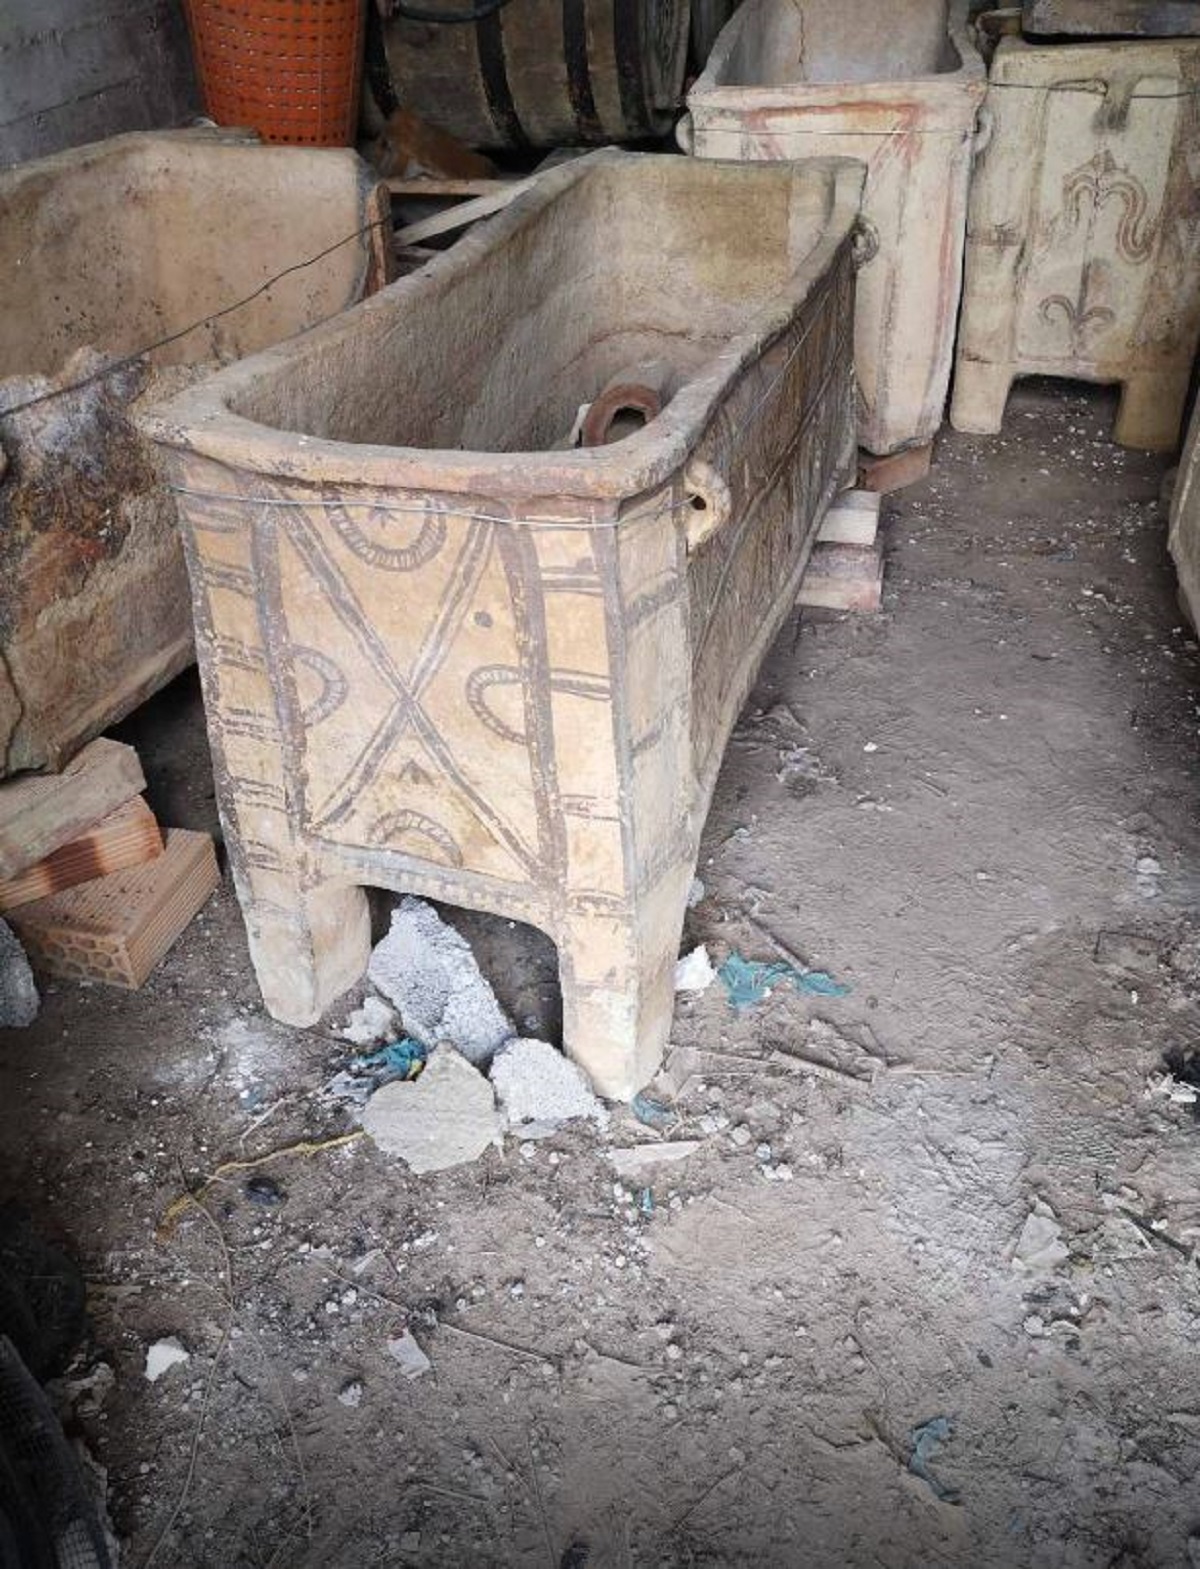 Ηράκλειο- αρχαιοκαπηλεία: «Πιθανόν από υστερομινωικό νεκροταφείο τα αρχαία» λέει στην ΕΡΤ η διευθύντρια της Εφορείας Αρχαιοτήτων Β. Συθιακάκη